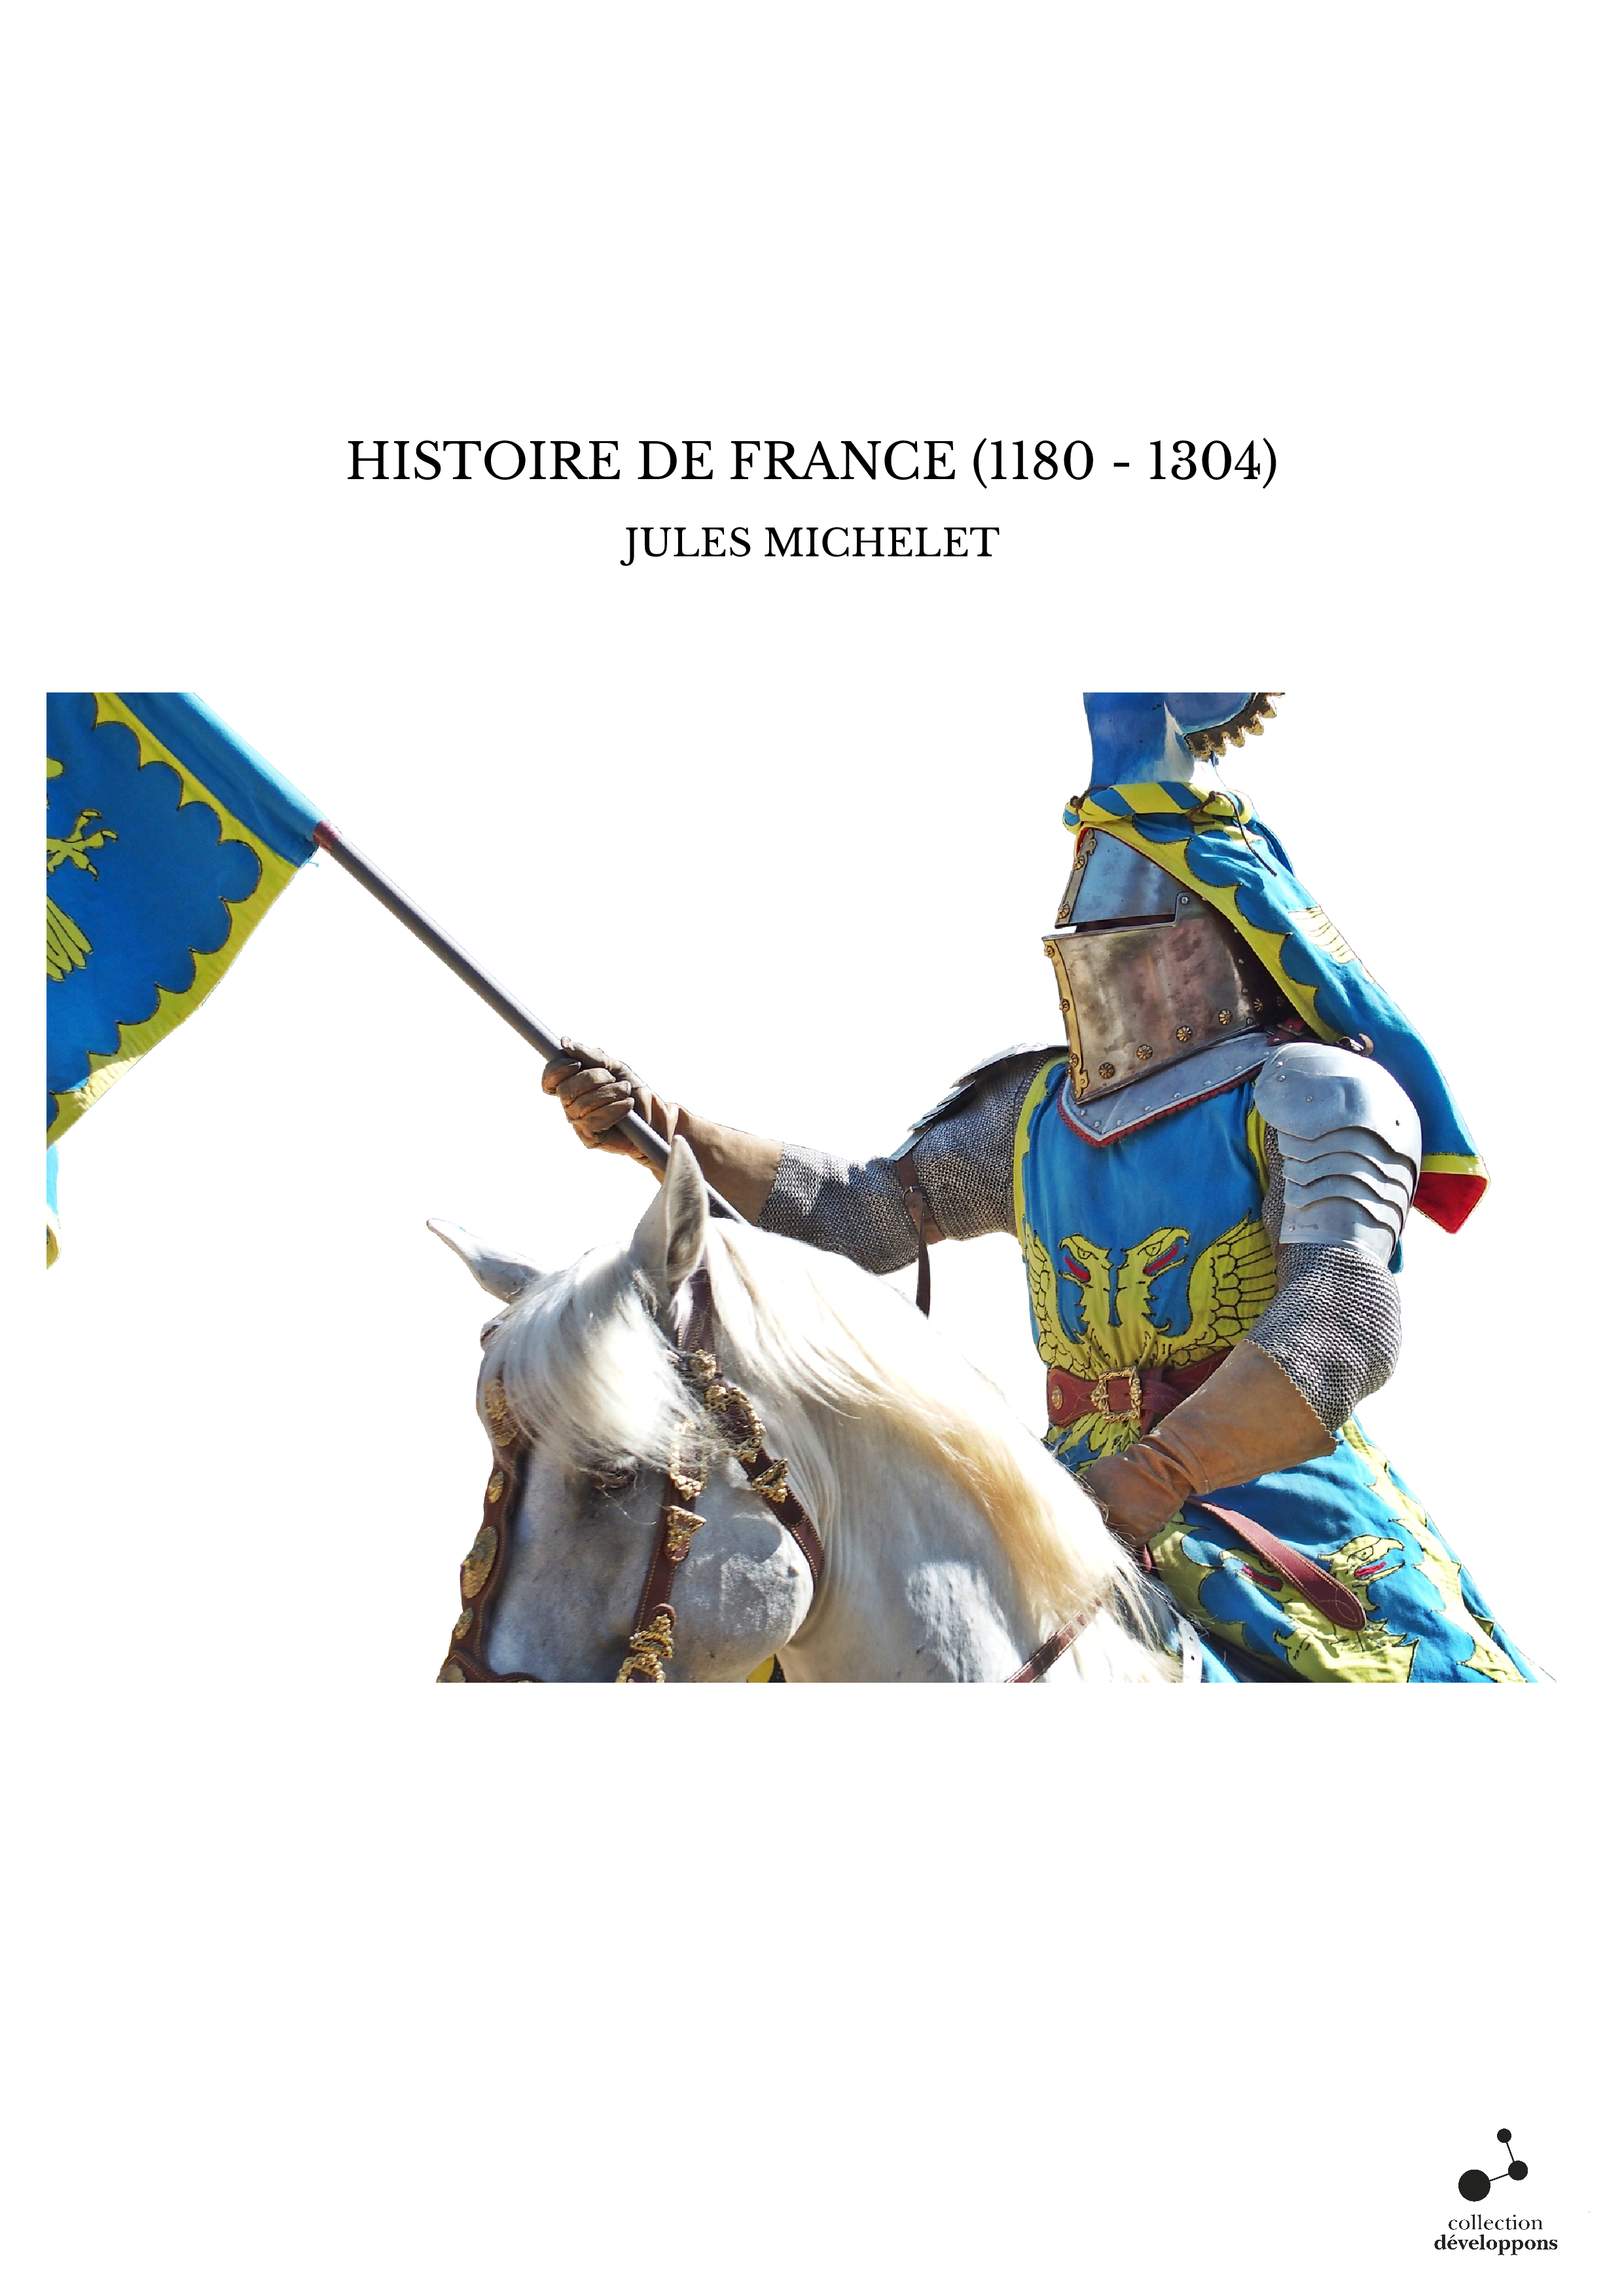 HISTOIRE DE FRANCE (1180 - 1304)